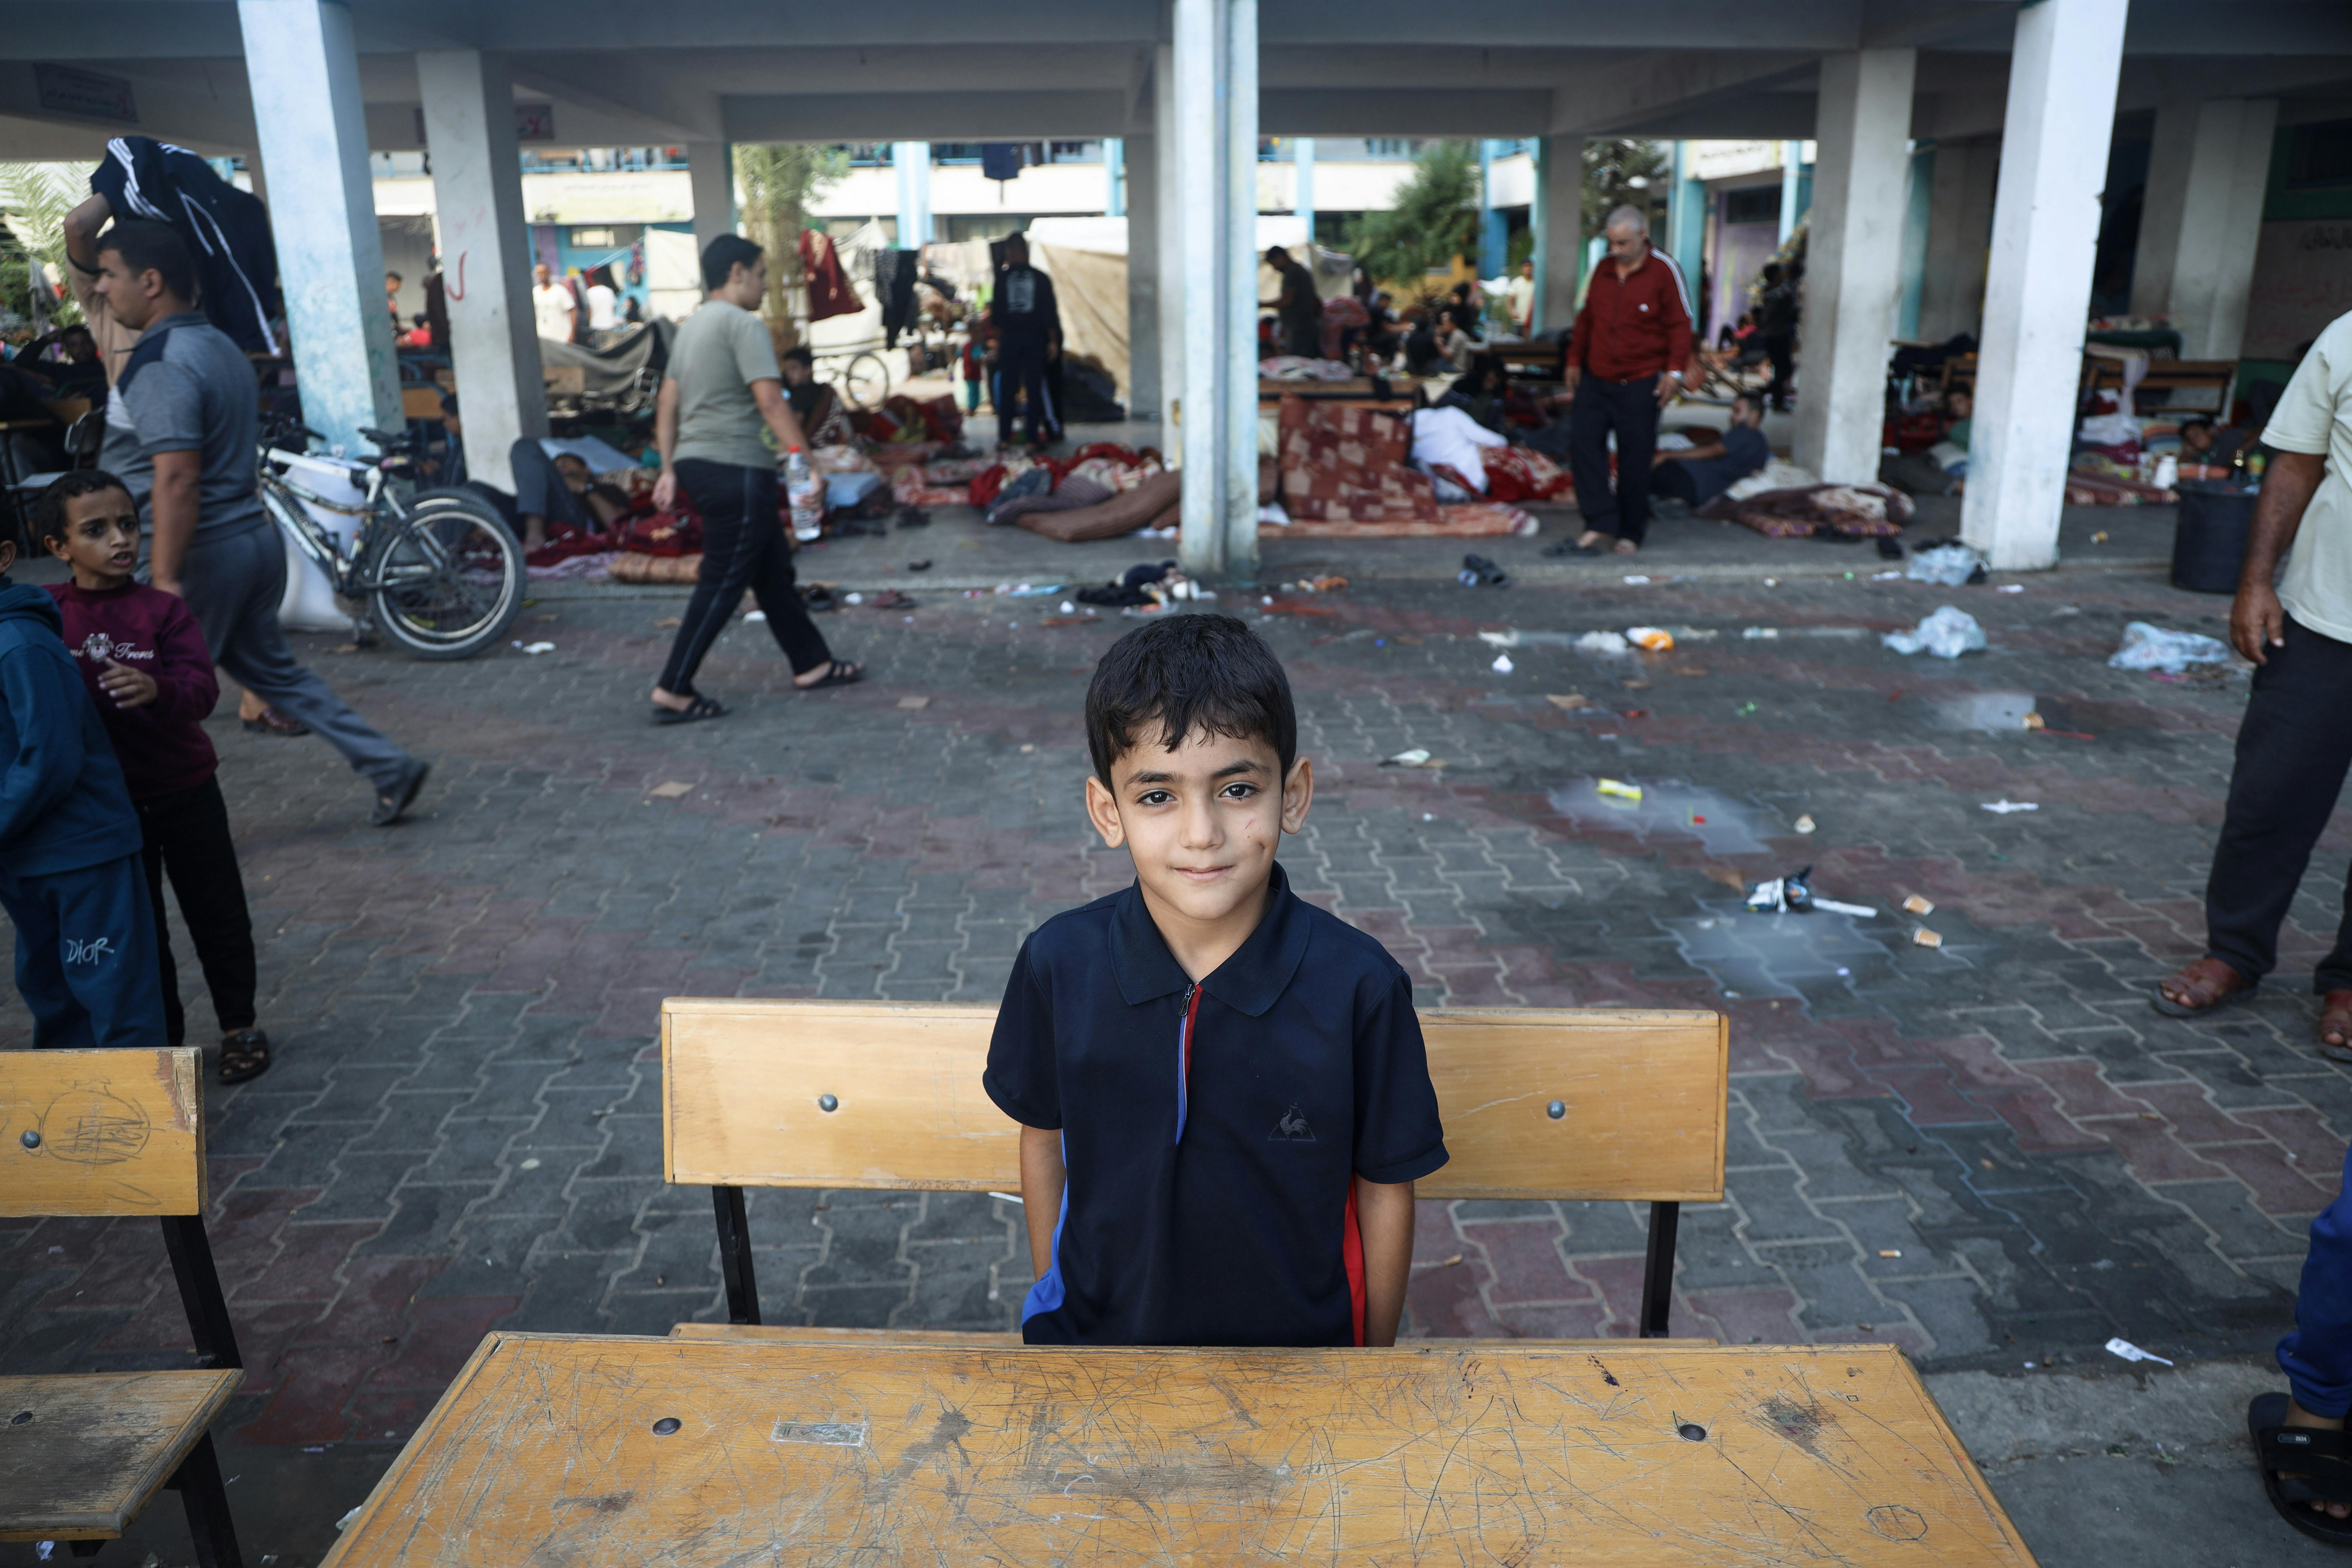 Ahmad, 10 anni, è seduto sul banco di scuola in uno dei rifugi nella città di Khan Younis, nella Striscia di Gaza. Non avrei mai immaginato che sarei stato seduto al mio banco da sfollato, amavo la mia scuola e le lezioni, ma non credo che amerò ancora la scuola dopo tutto questo